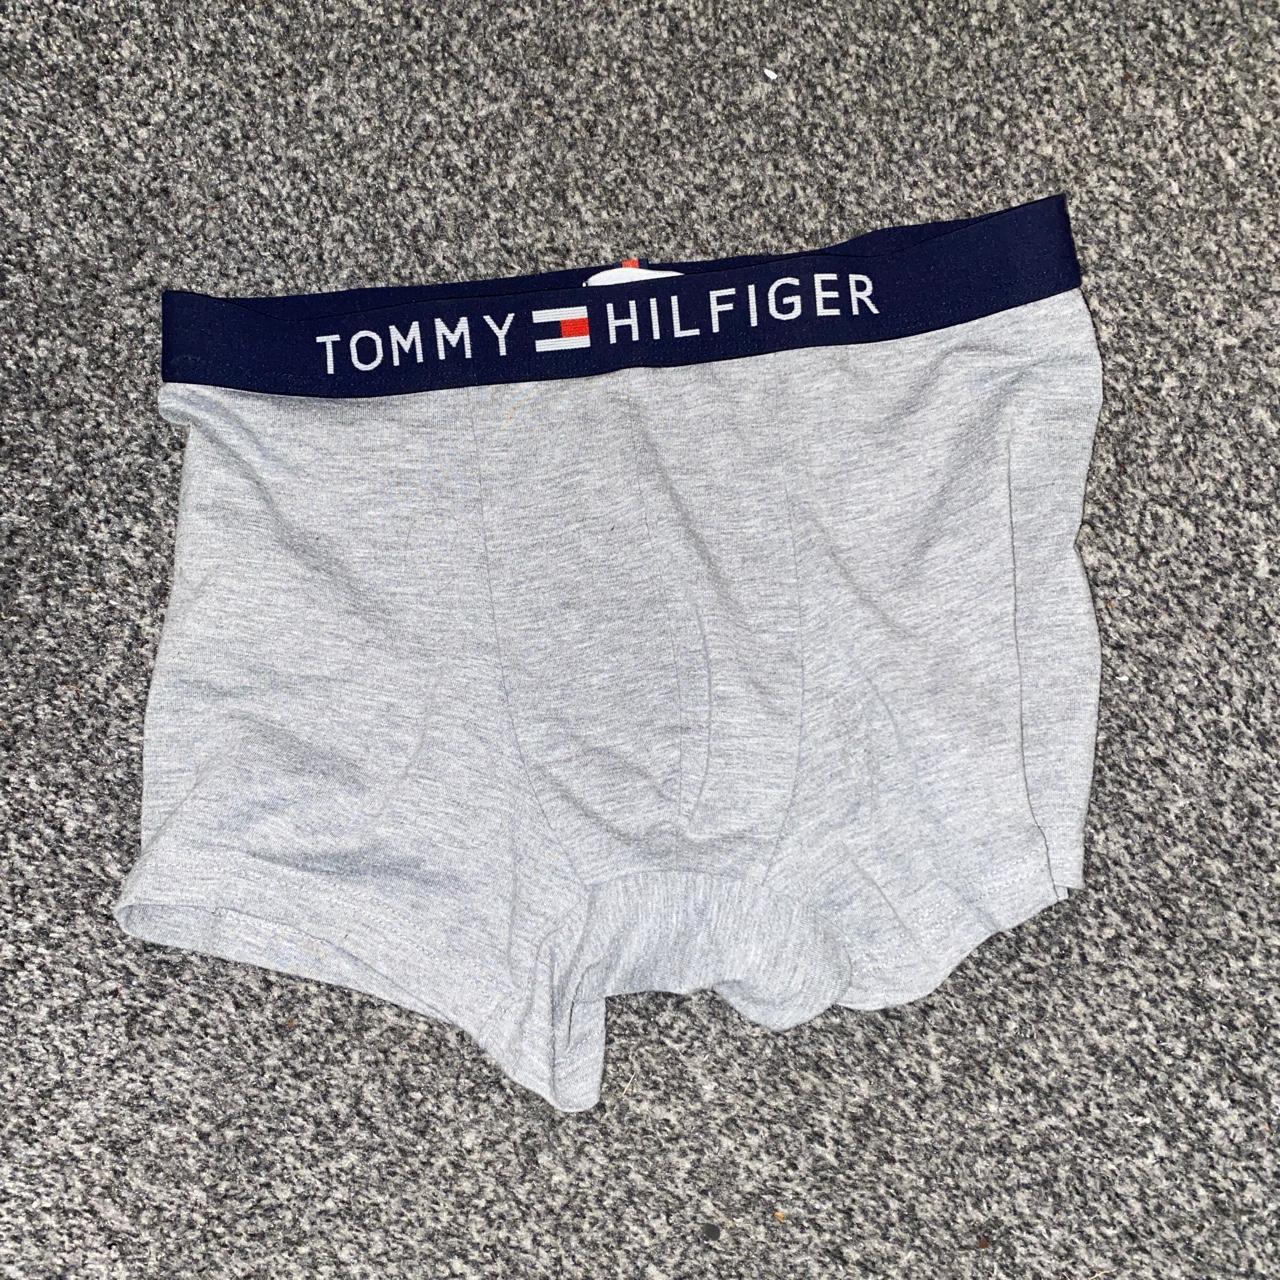 Tommy Hilfiger boxers - Depop